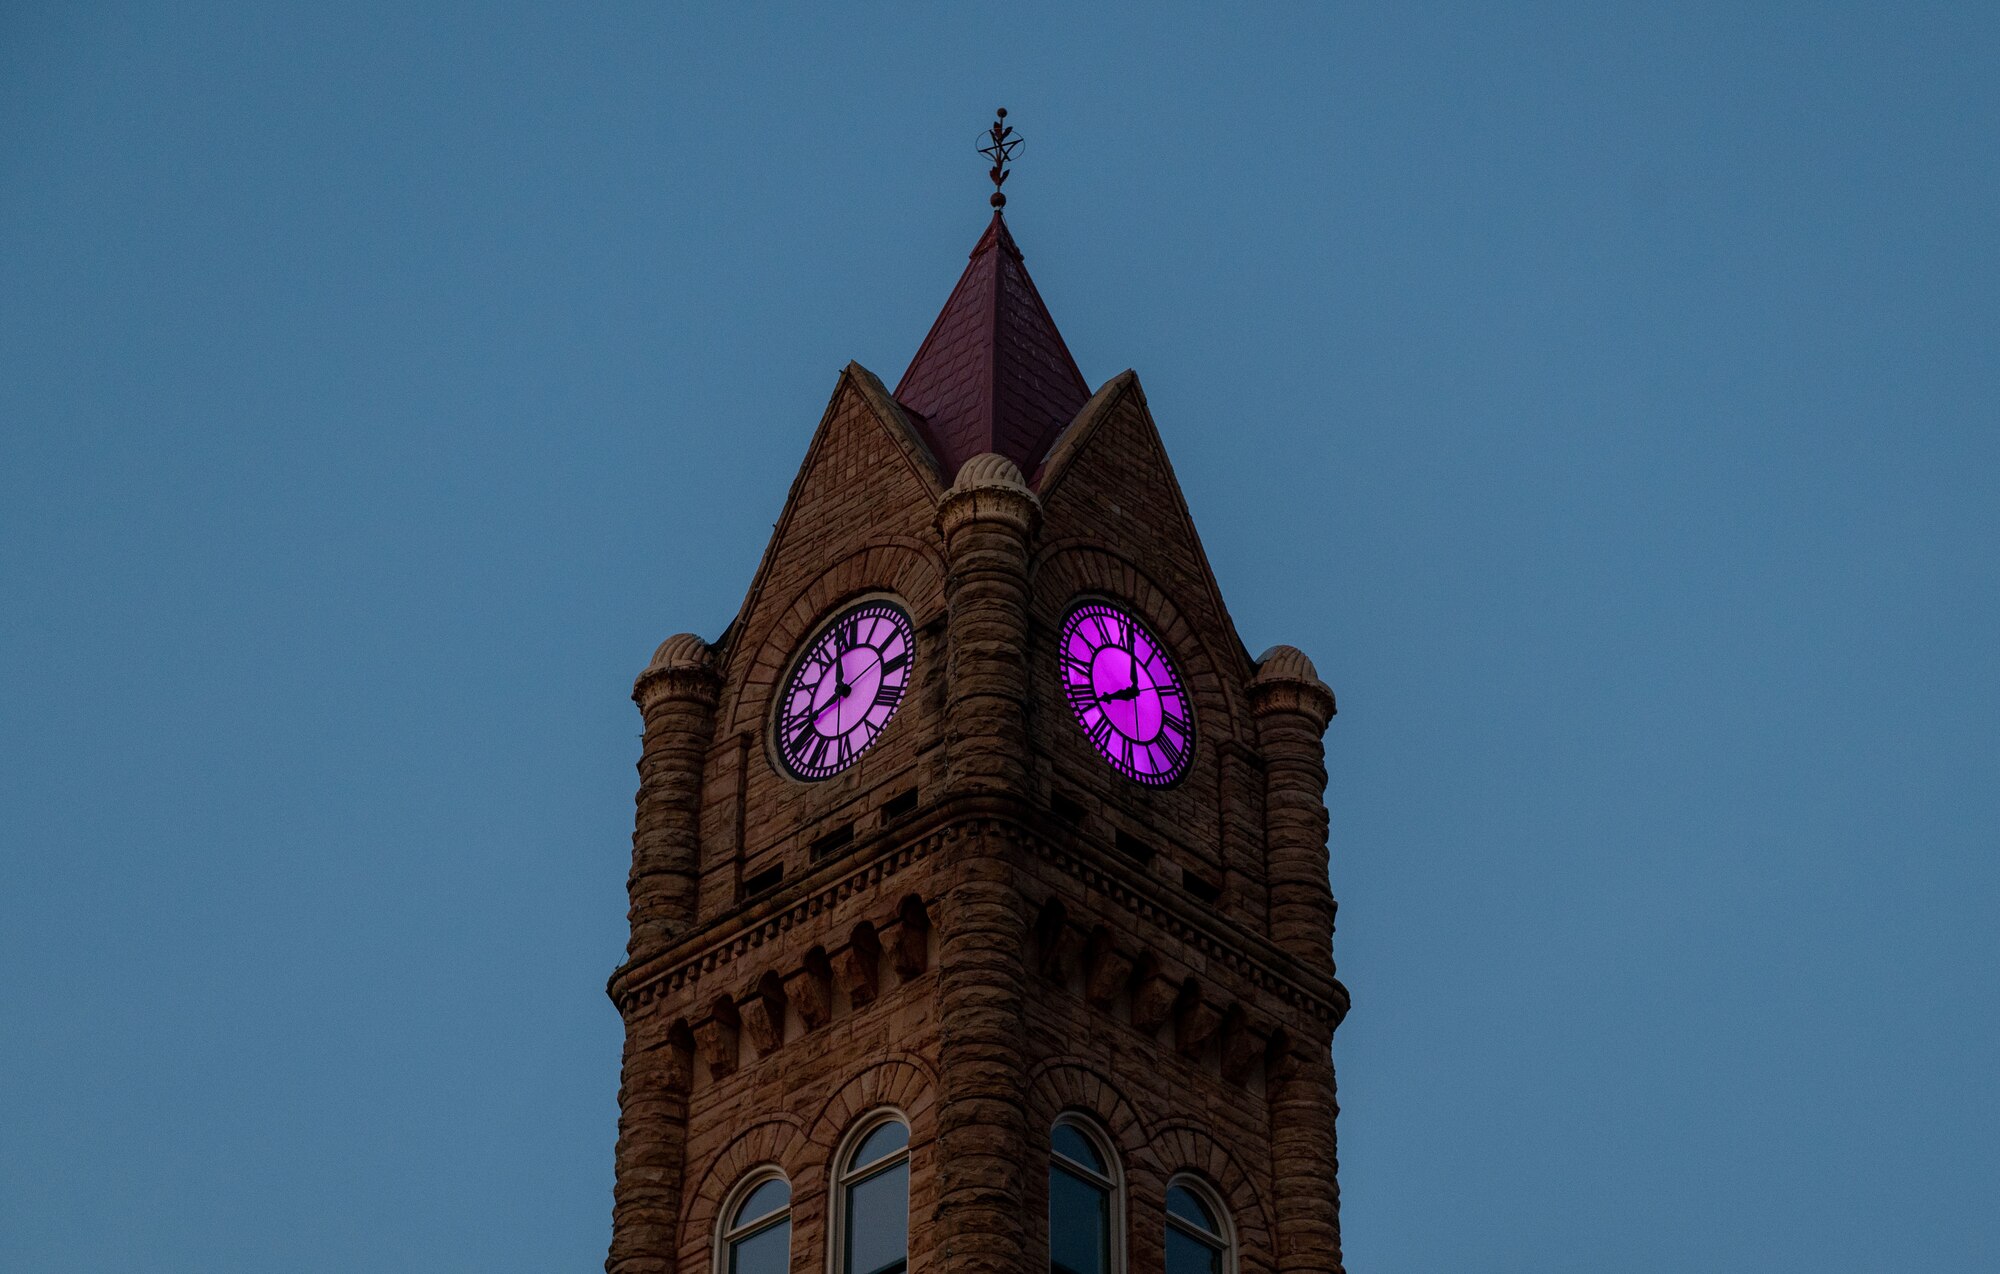 Image of Sumter Opera House clocktower